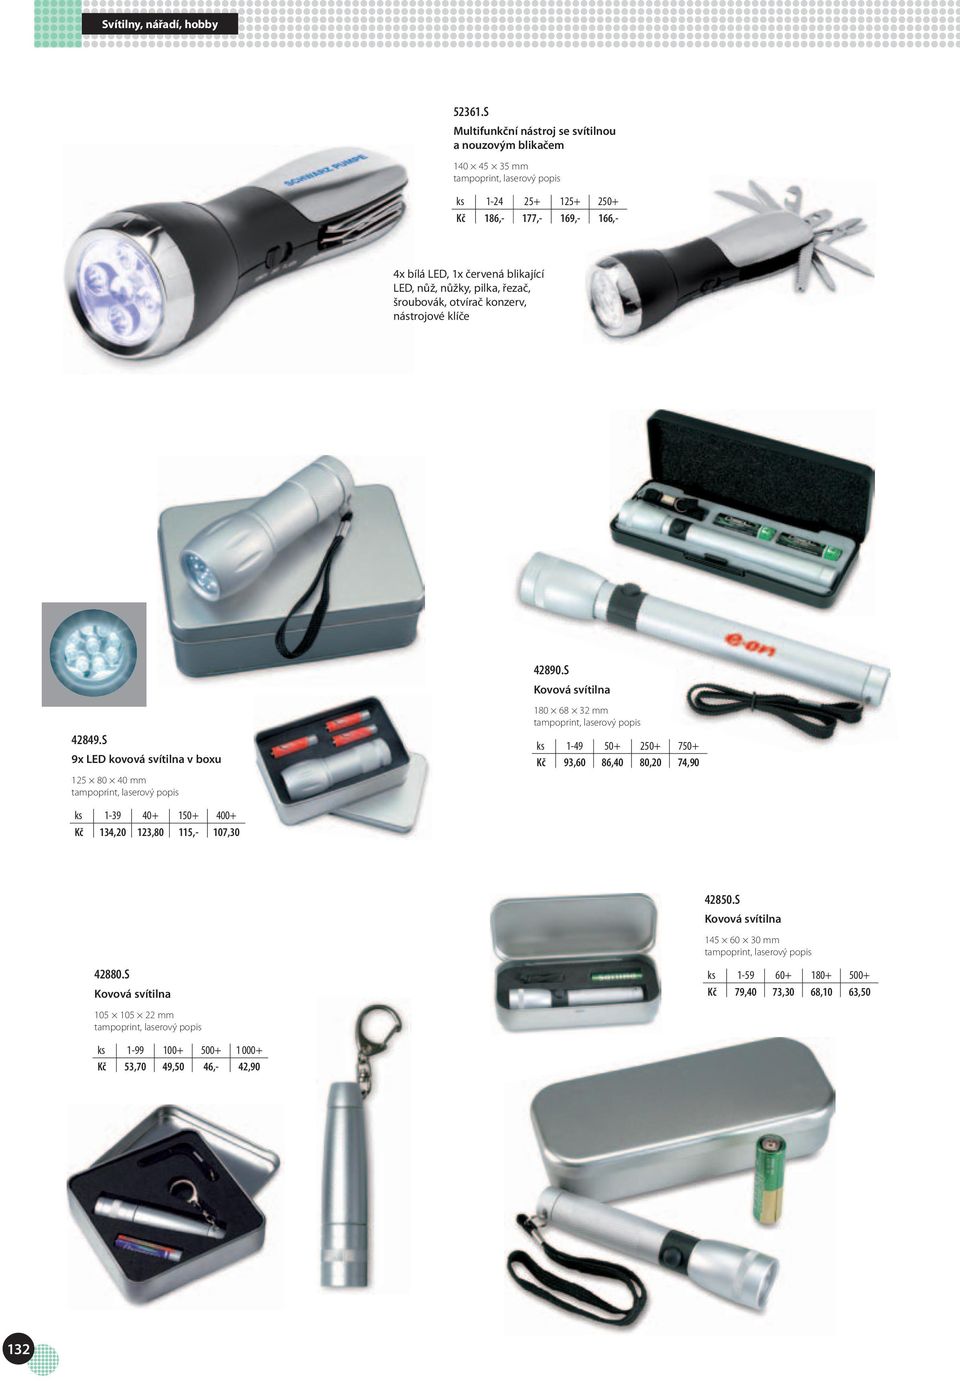 LED, nůž, nůžky, pilka, řezač, šroubovák, otvírač konzerv, nástrojové klíče 42849.S 9x LED kovová svítilna v boxu 125 80 40 mm, laserový popis 42890.